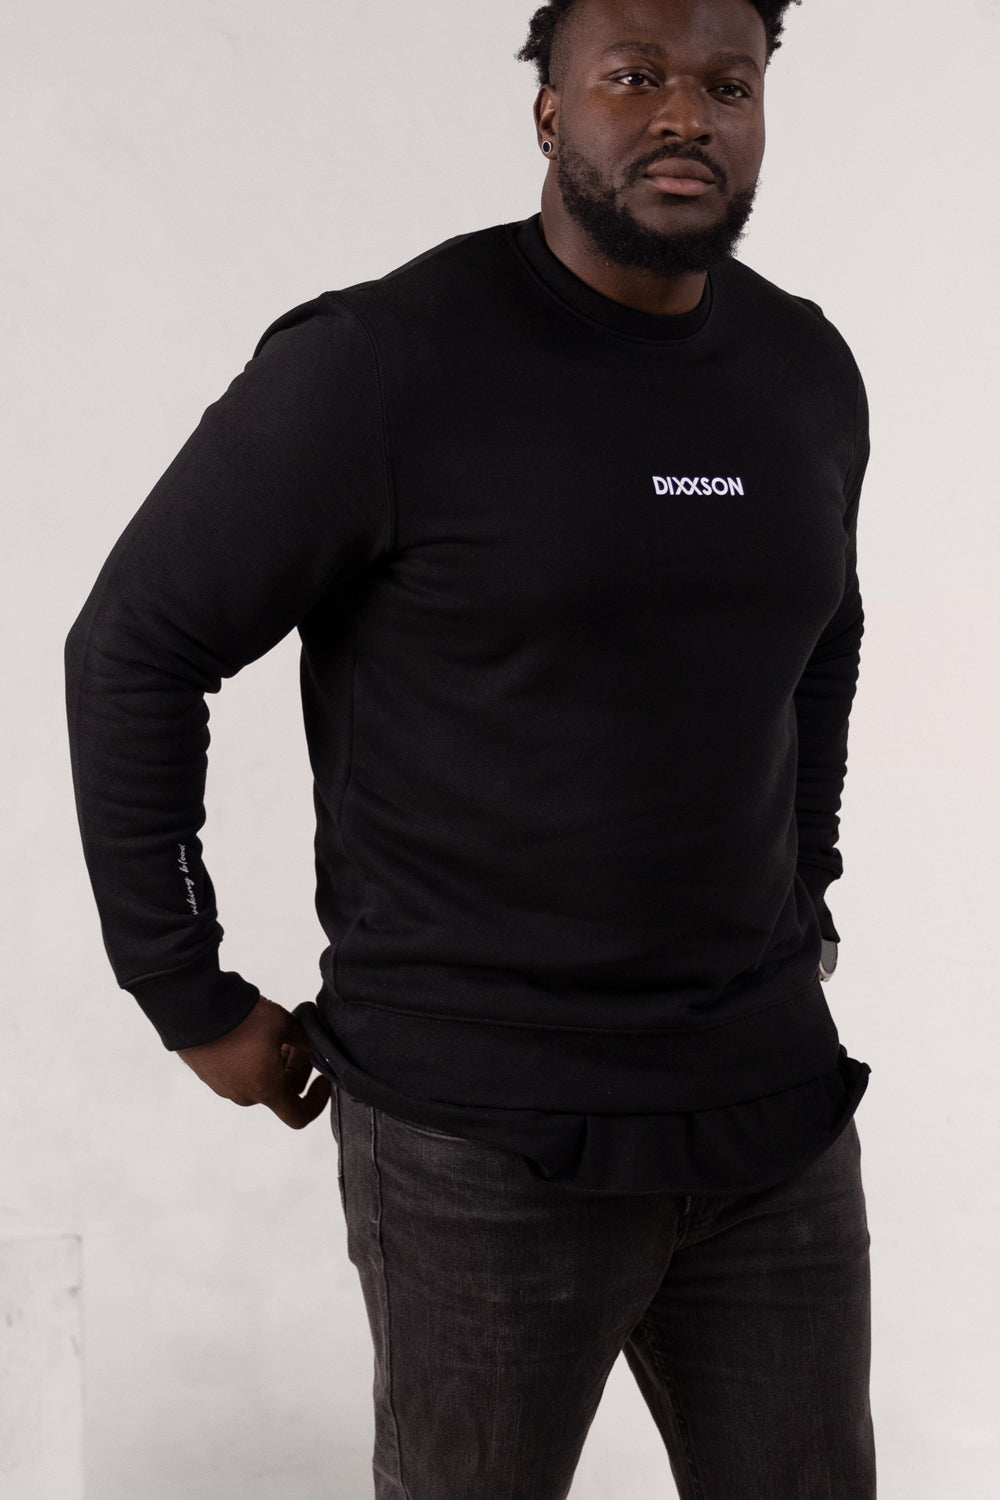 DIXXSON Crew Neck Sweater Pullover Herren Bio Baumwolle ragnar black schwarz Vorderseite